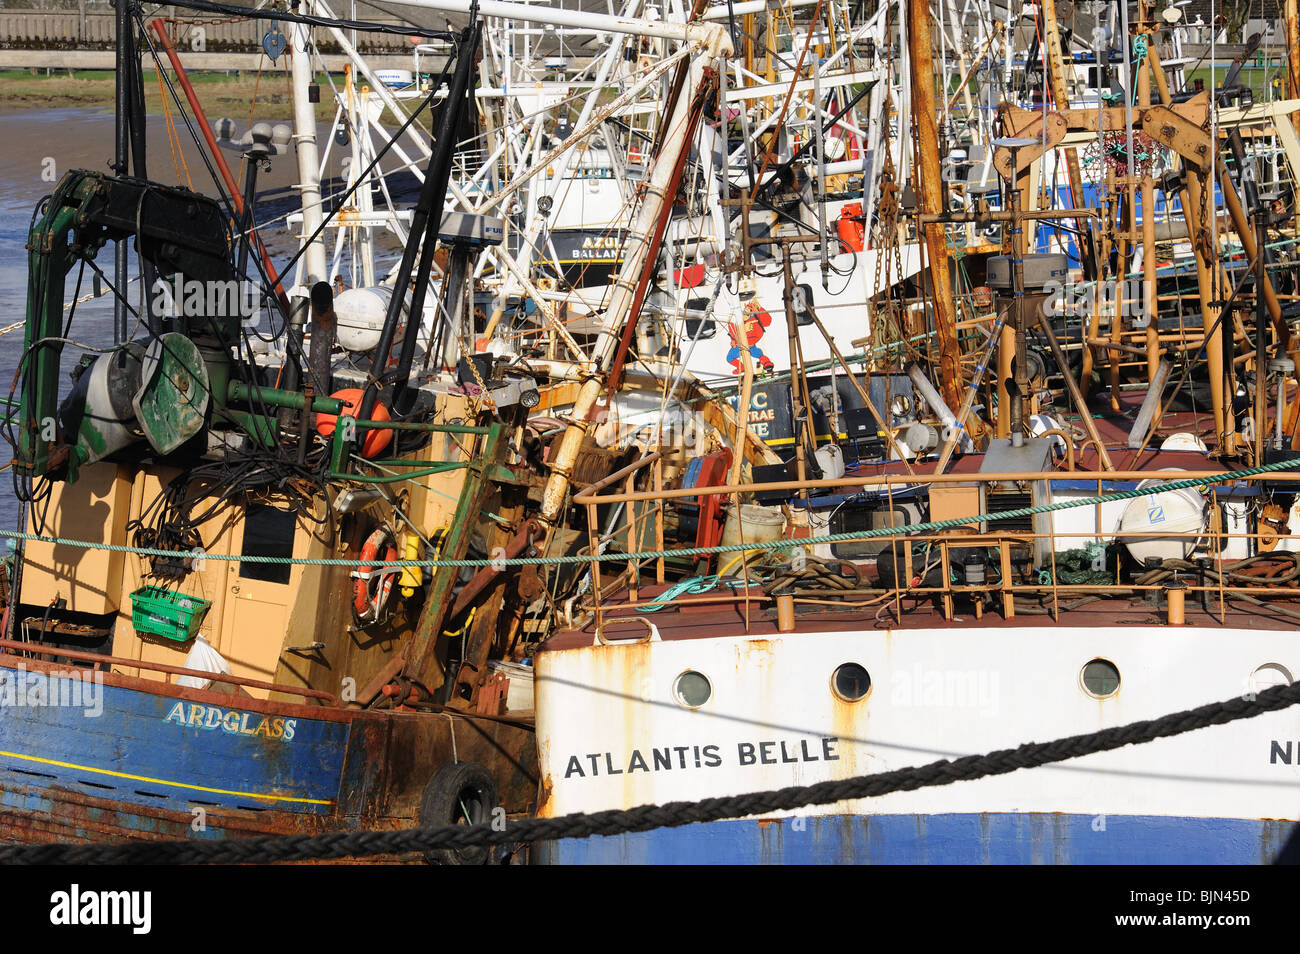 Ammassato accozzaglia di attrezzi da pesca a smerlo flotta peschereccia, Kirkcudbright Harbour, SW Scozia Scotland Foto Stock